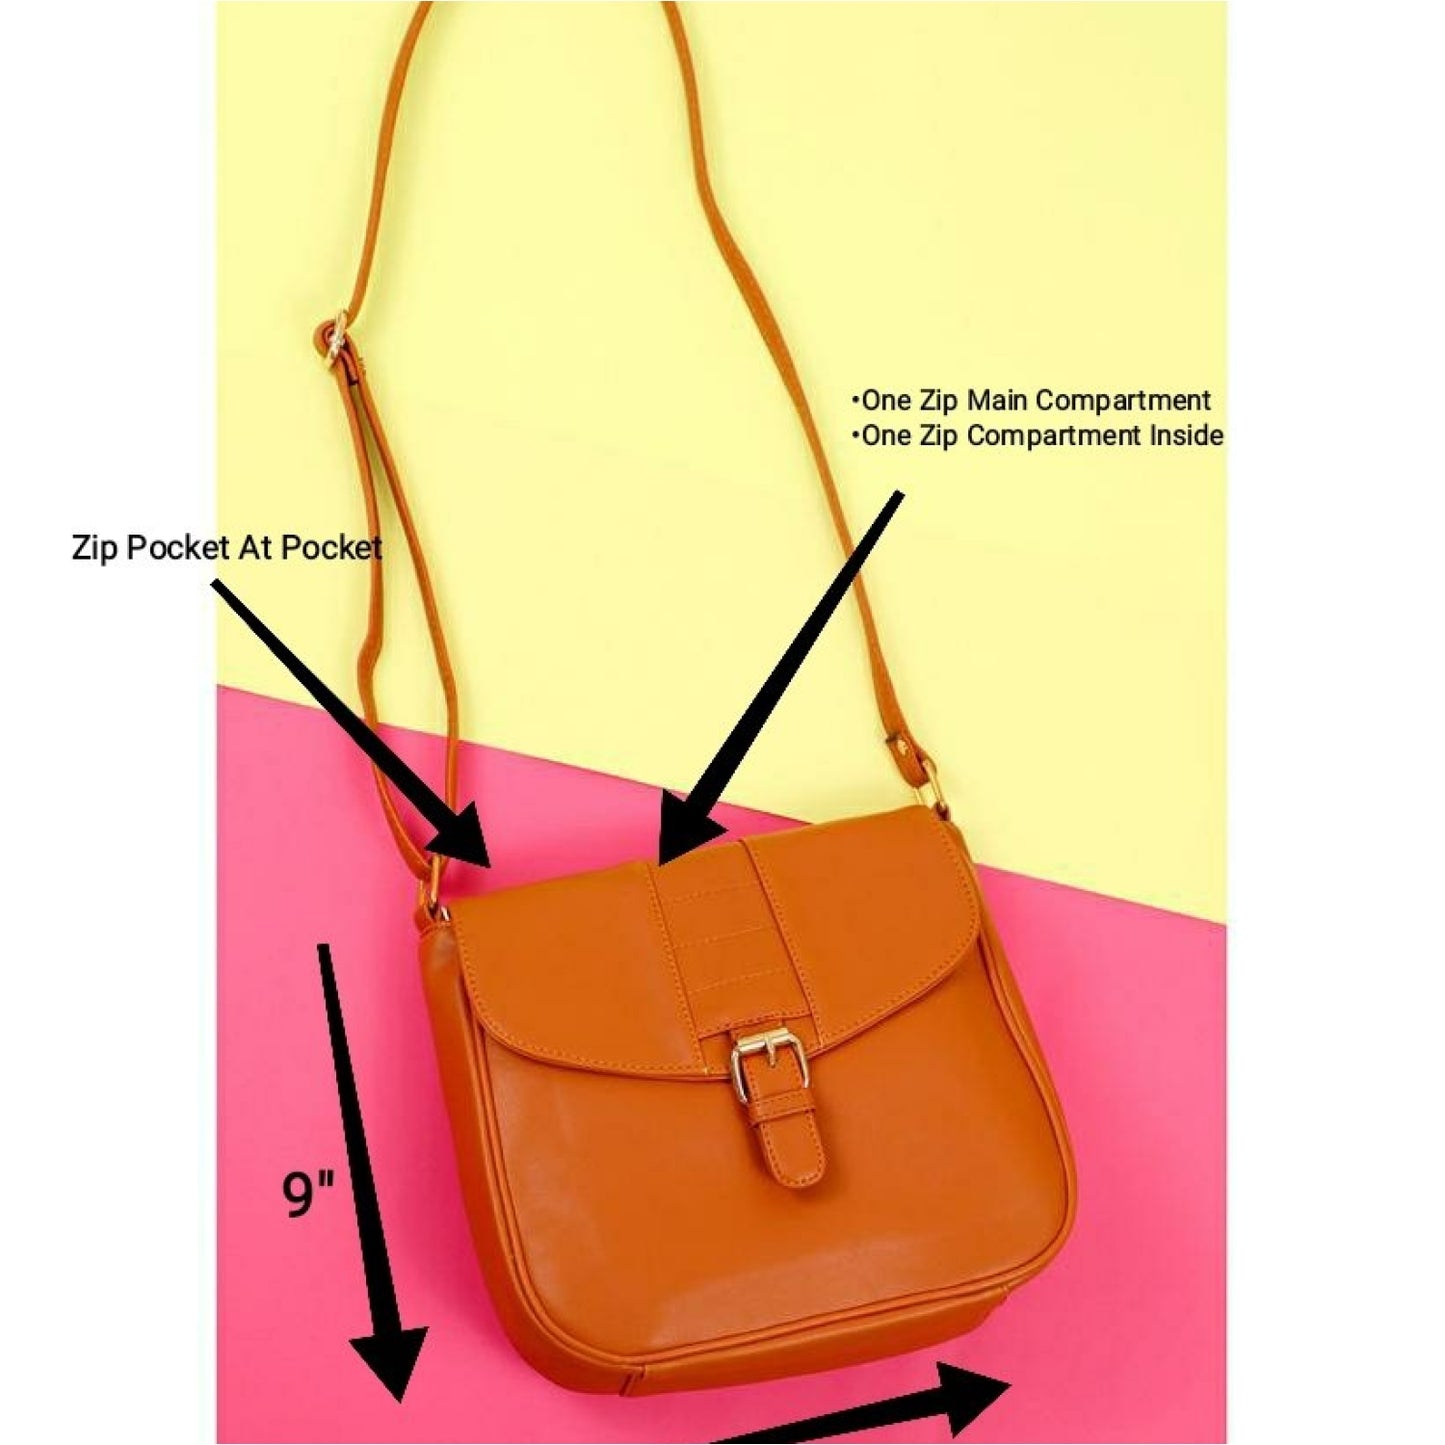 Pochette Tan Sling Bag. - SLING BAG